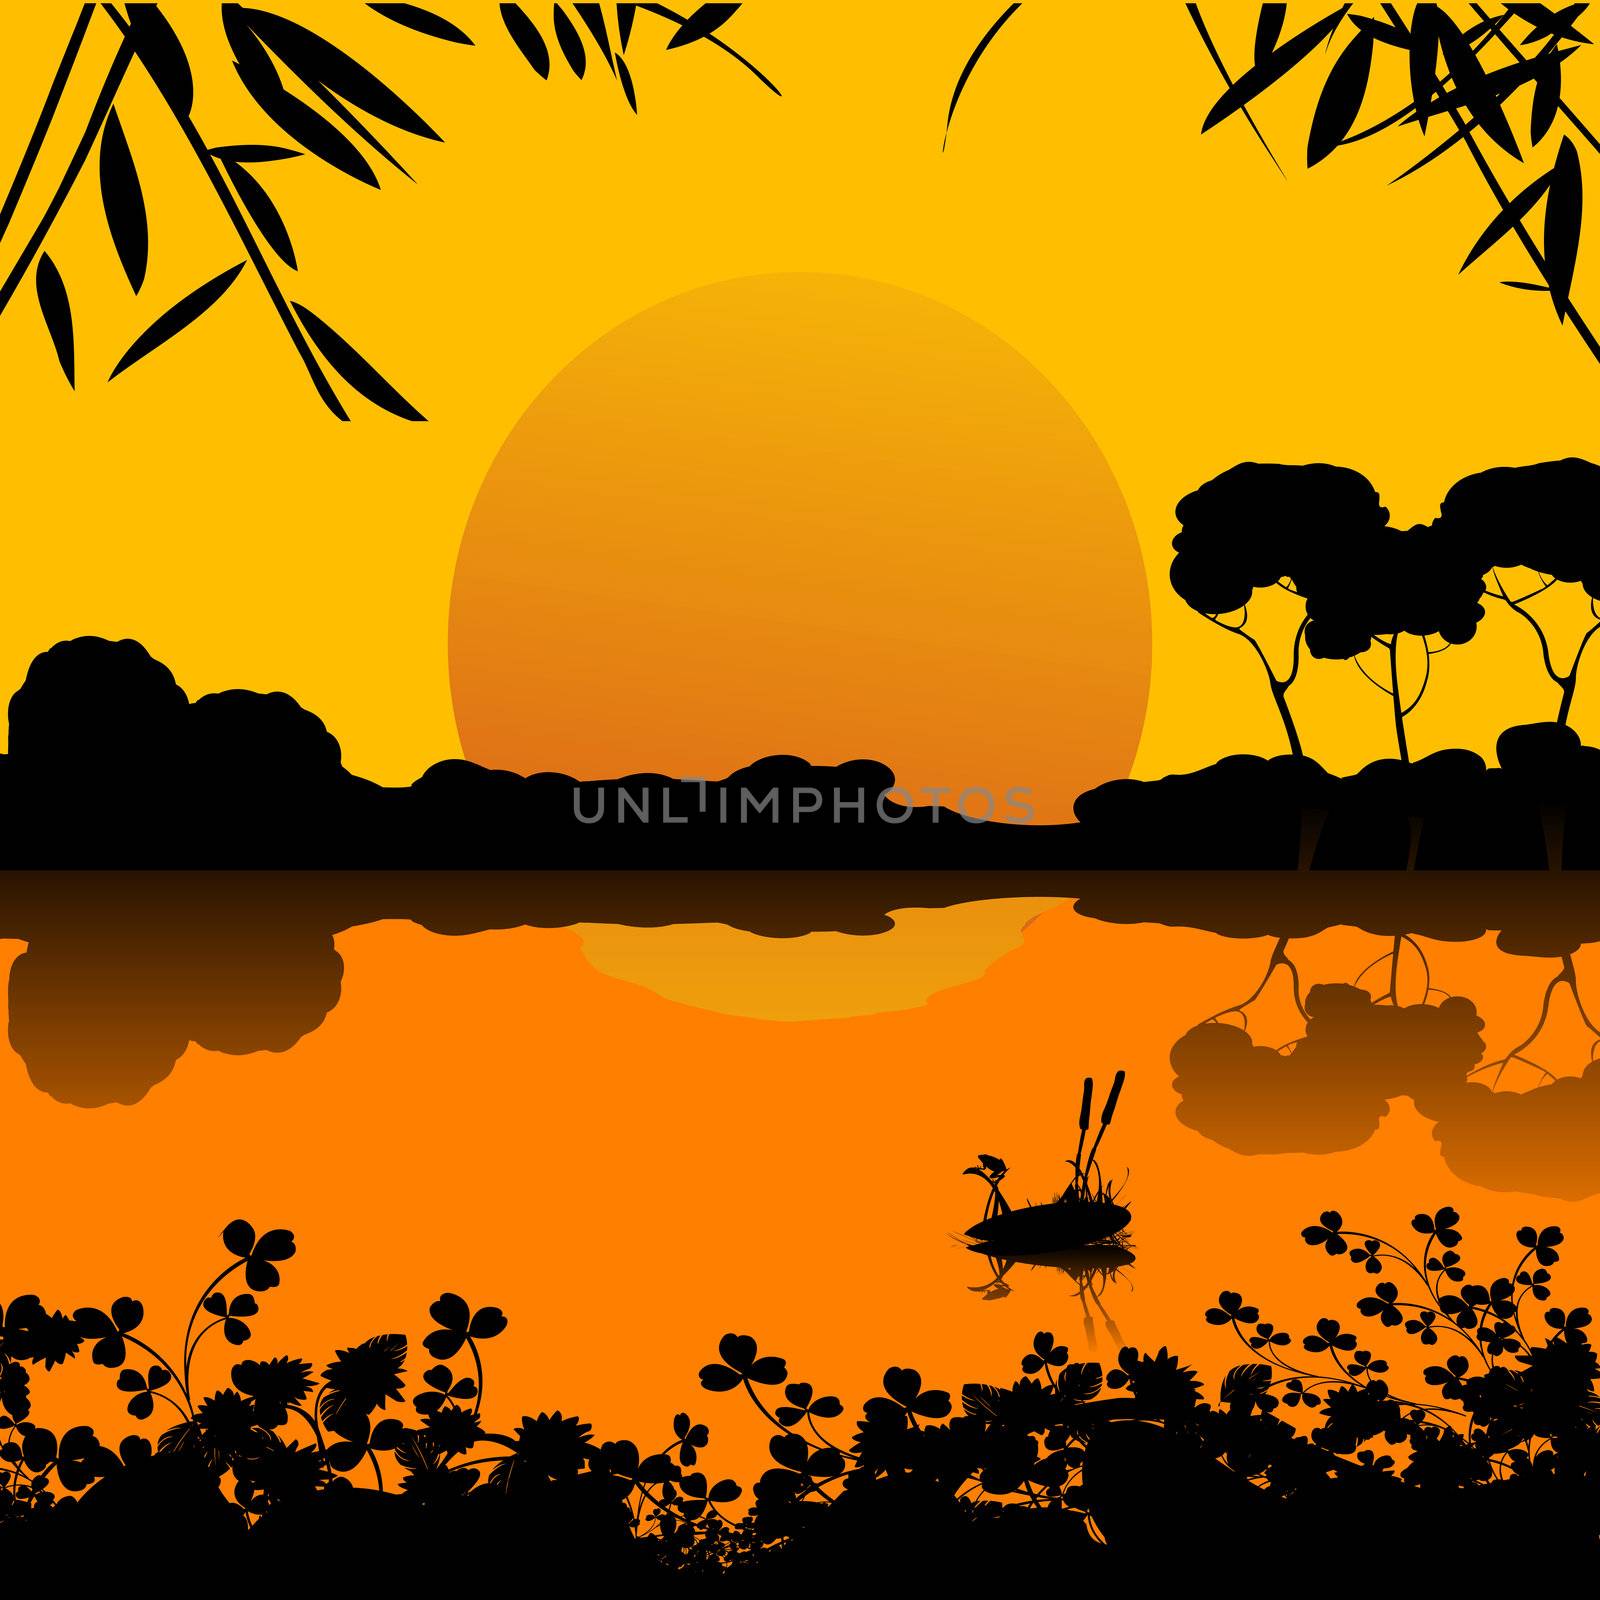 sunset on a lake scene by Lirch